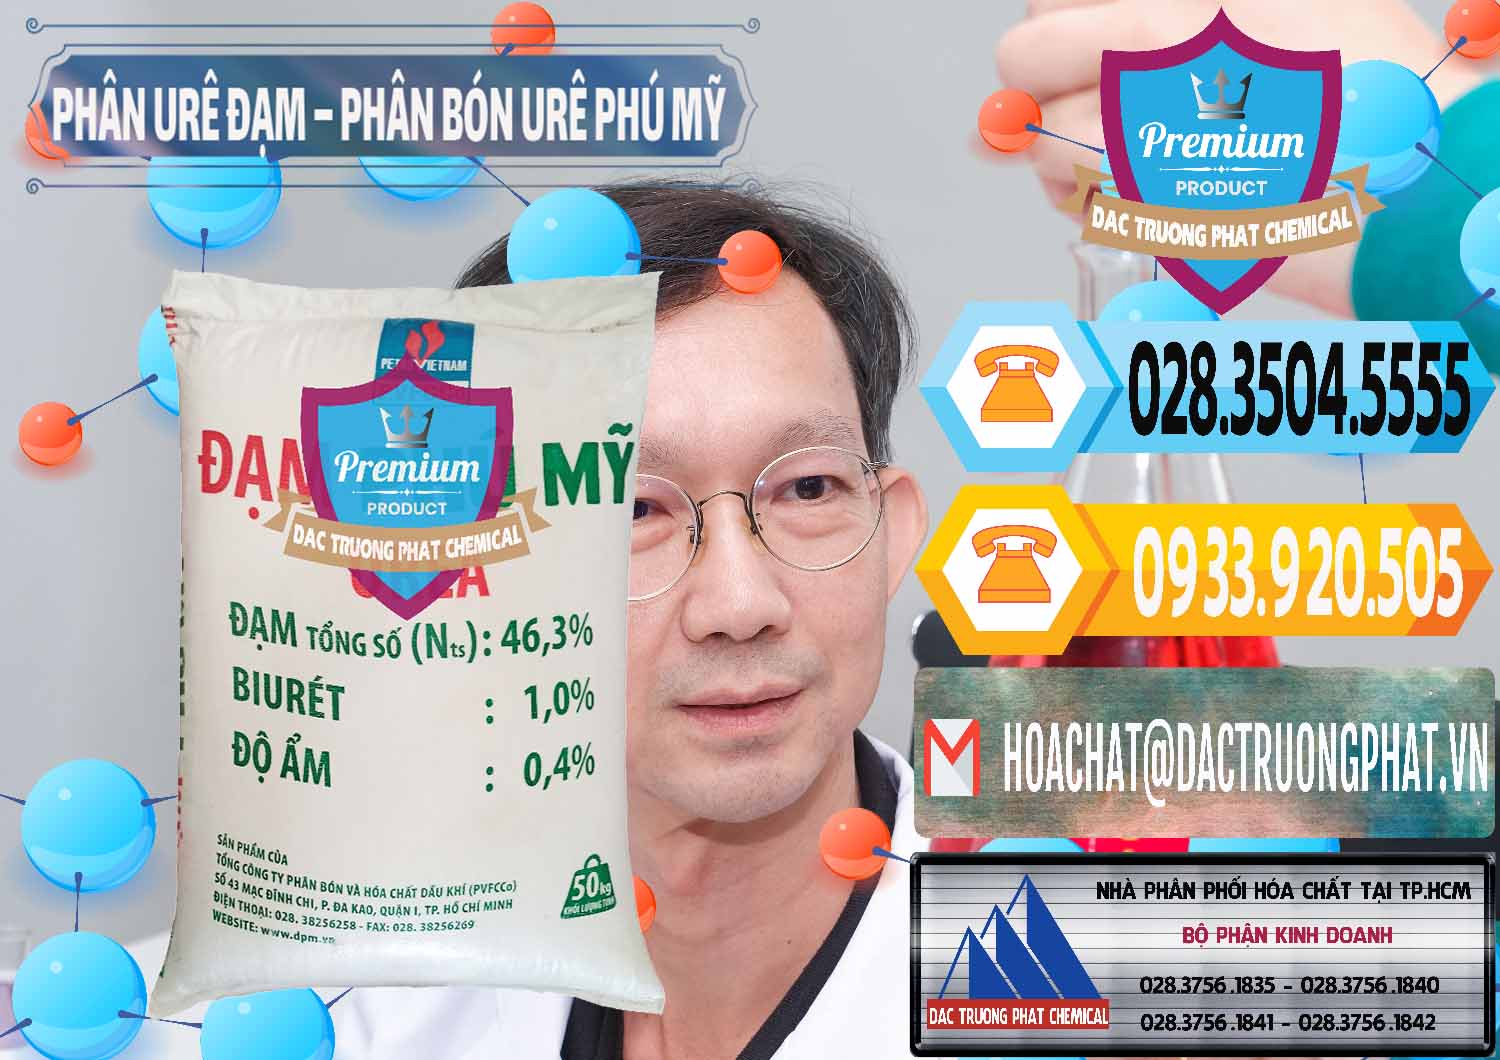 Đơn vị cung cấp và kinh doanh Phân Urê Đạm – Phân Bón Urê Phú Mỹ Việt Nam - 0193 - Công ty cung cấp và bán hóa chất tại TP.HCM - hoachattayrua.net